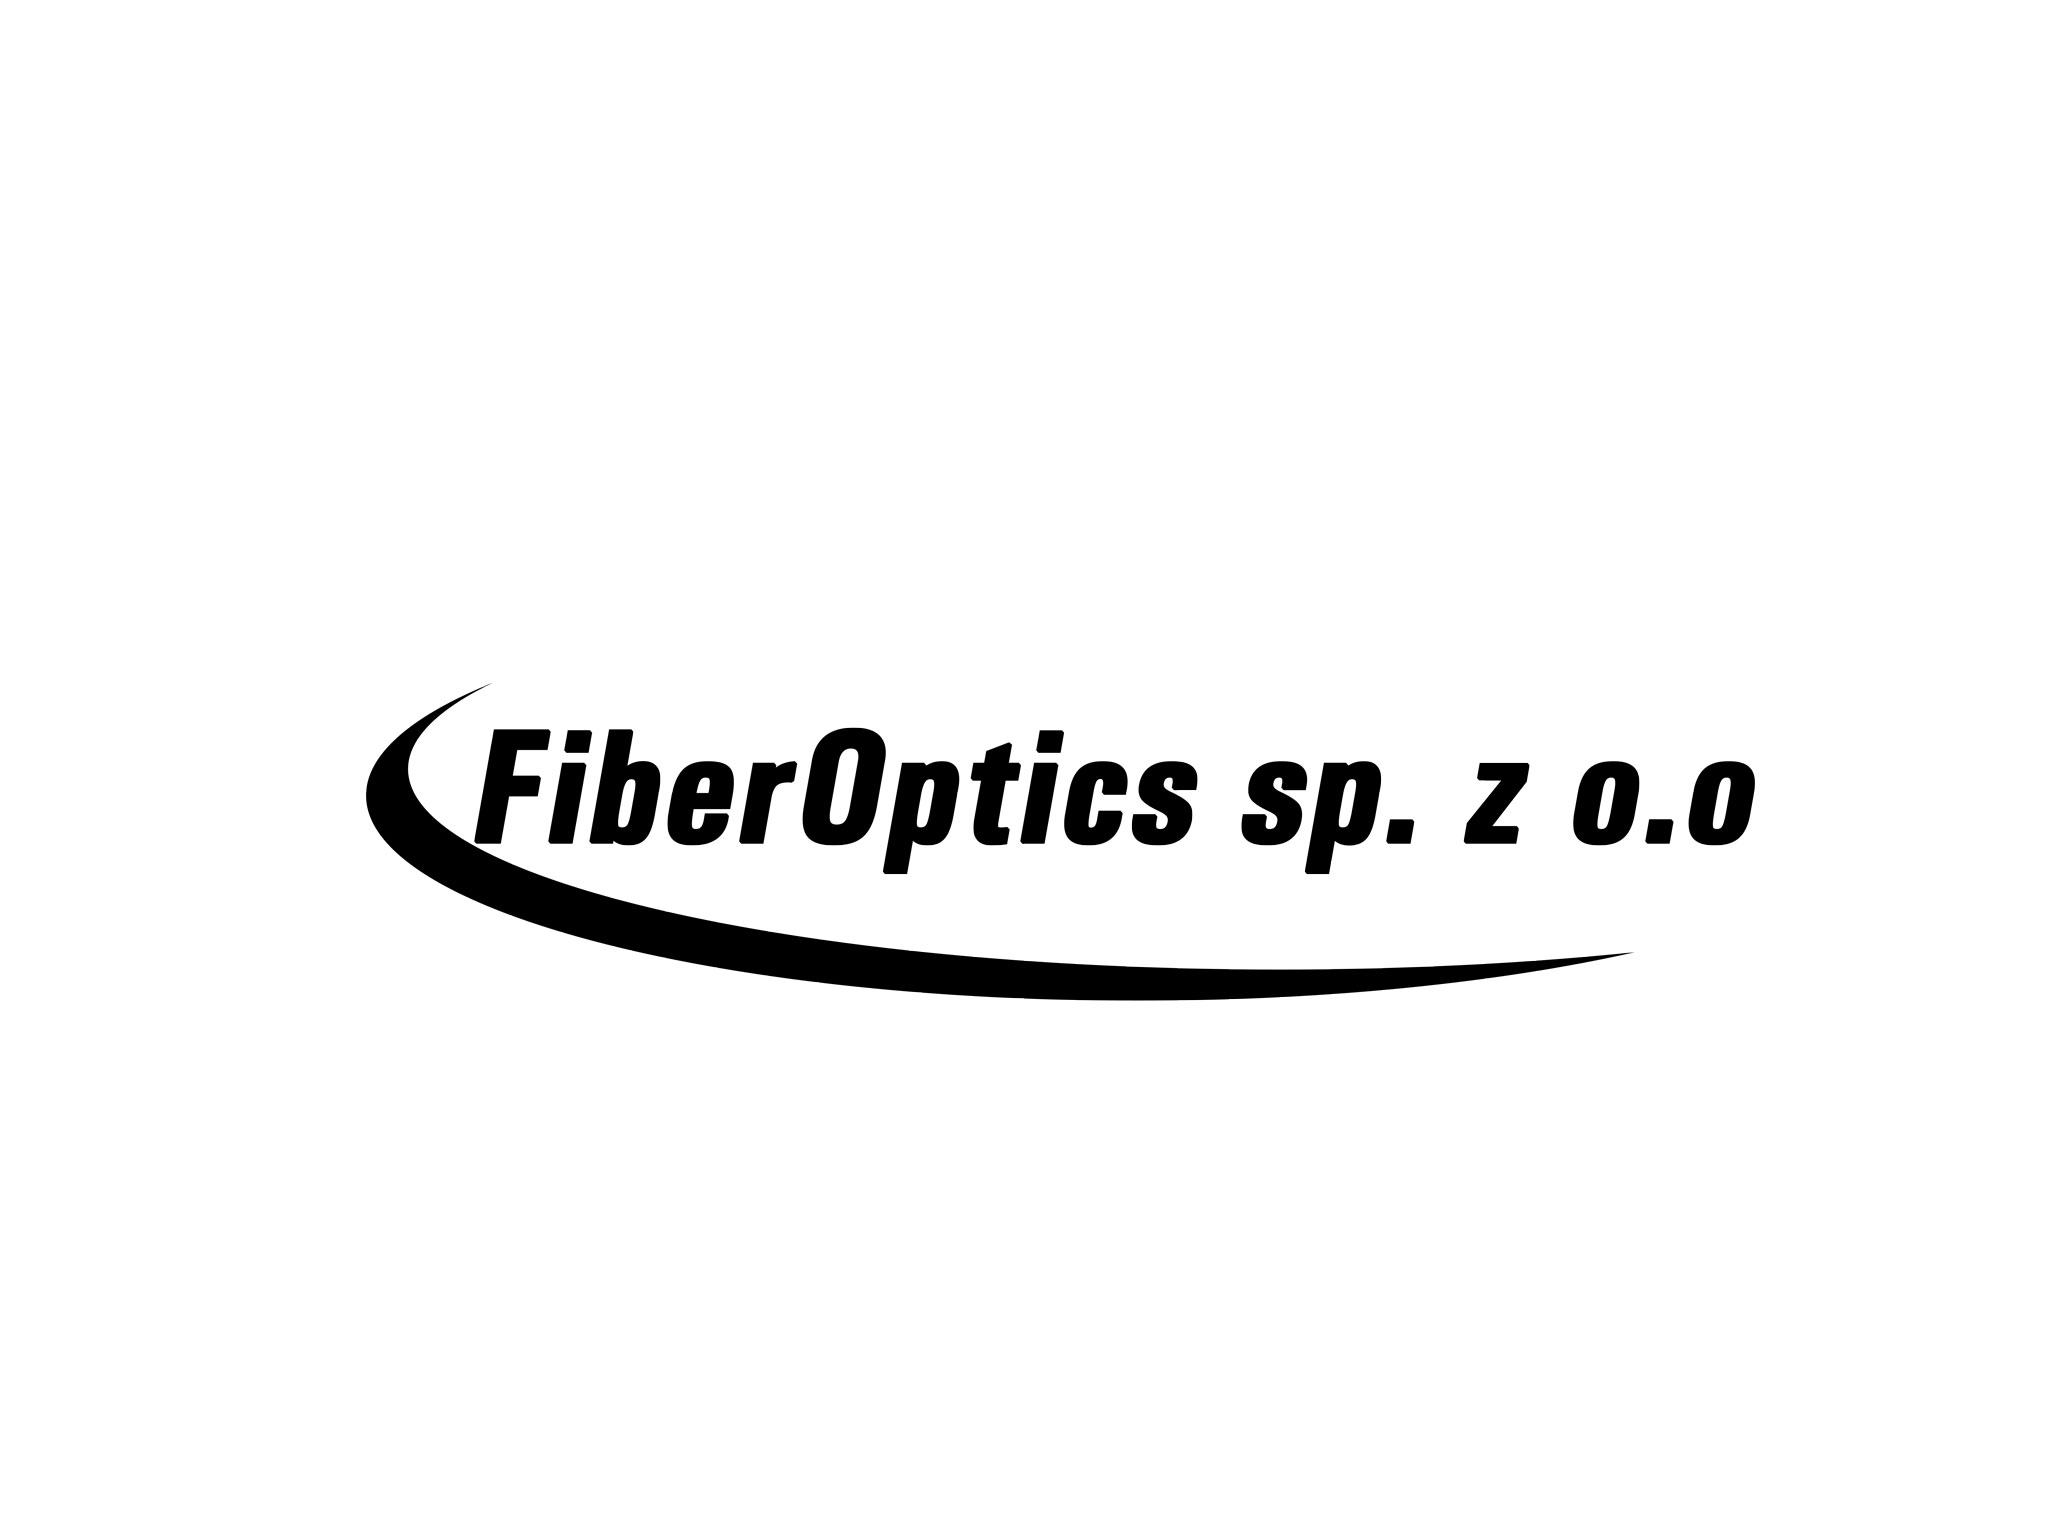 FiberOptics sp. z o.o